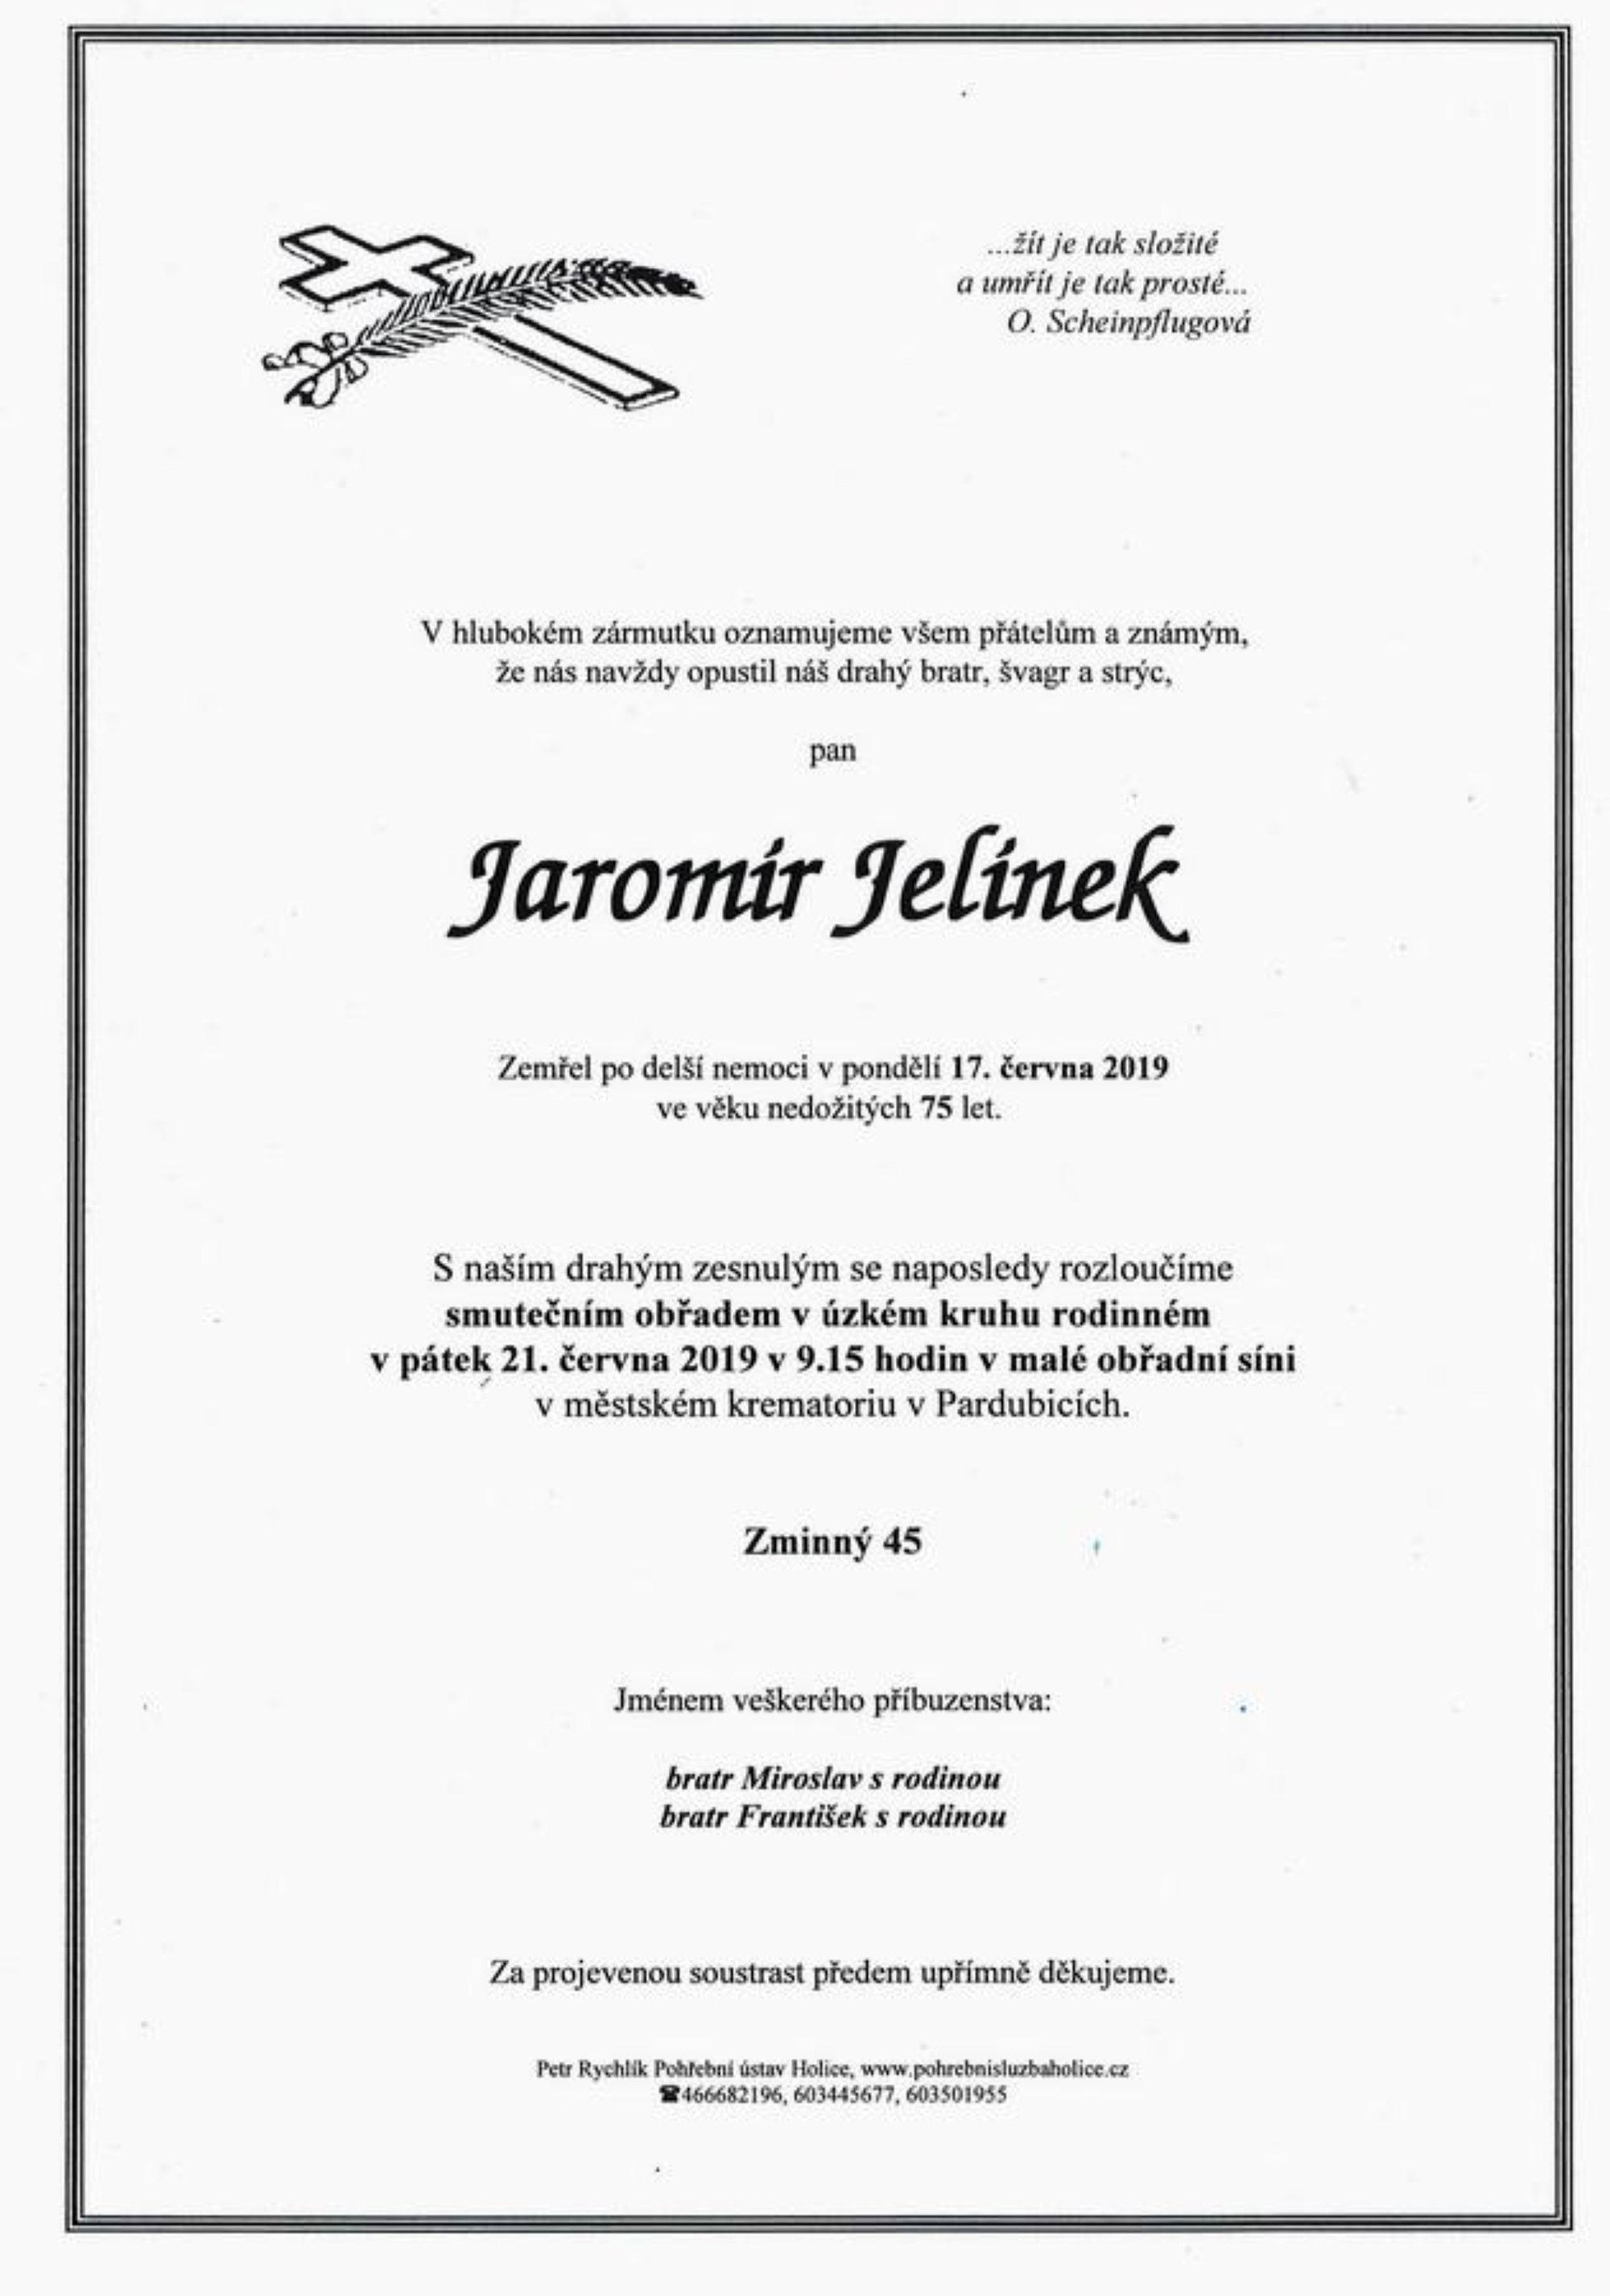 Jaromír Jelínek